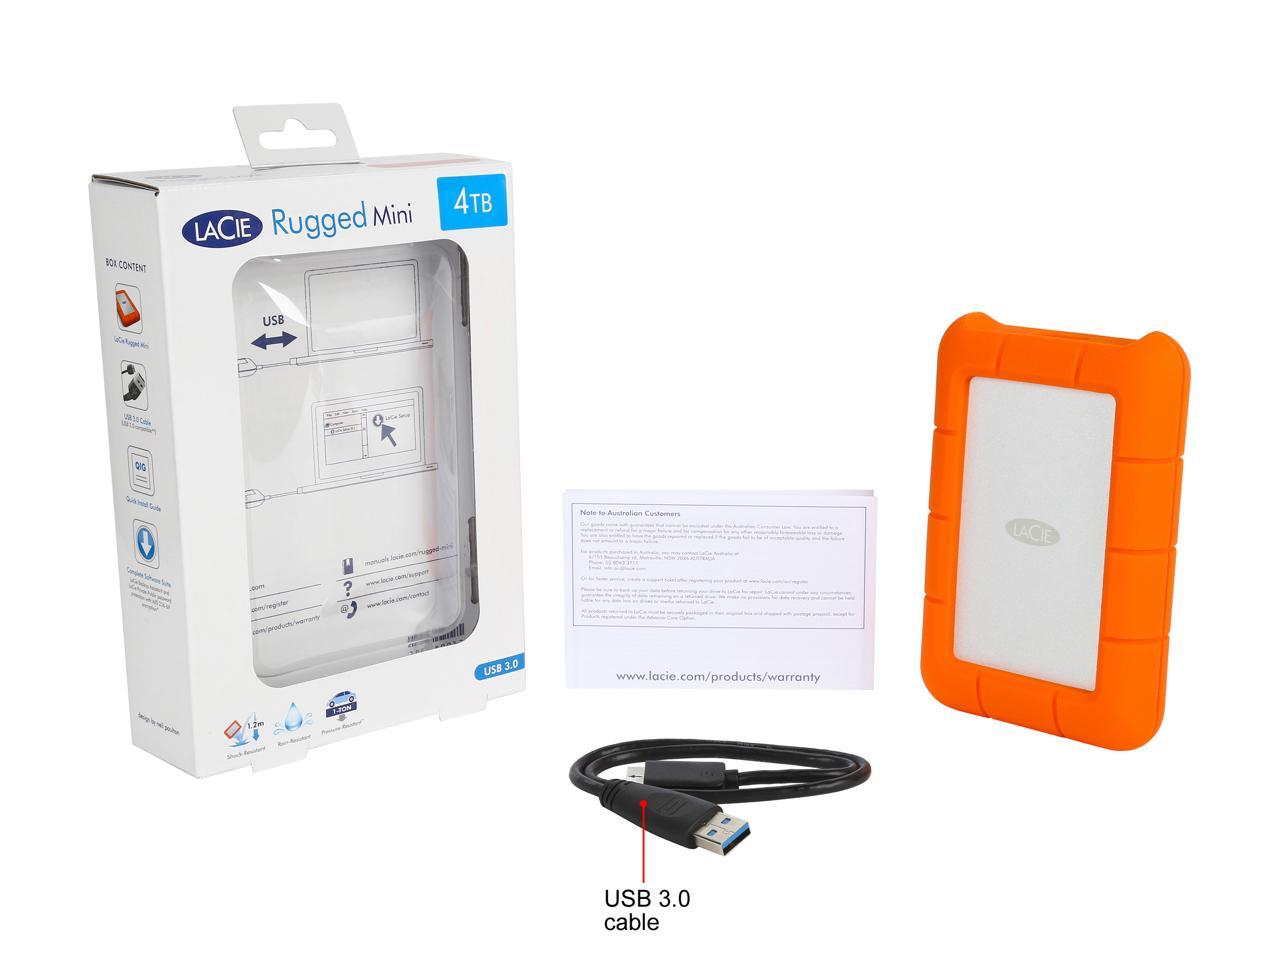 LaCie 4TB Rugged Mini External Hard Drive USB 3.0 Model LAC9000633 Orange